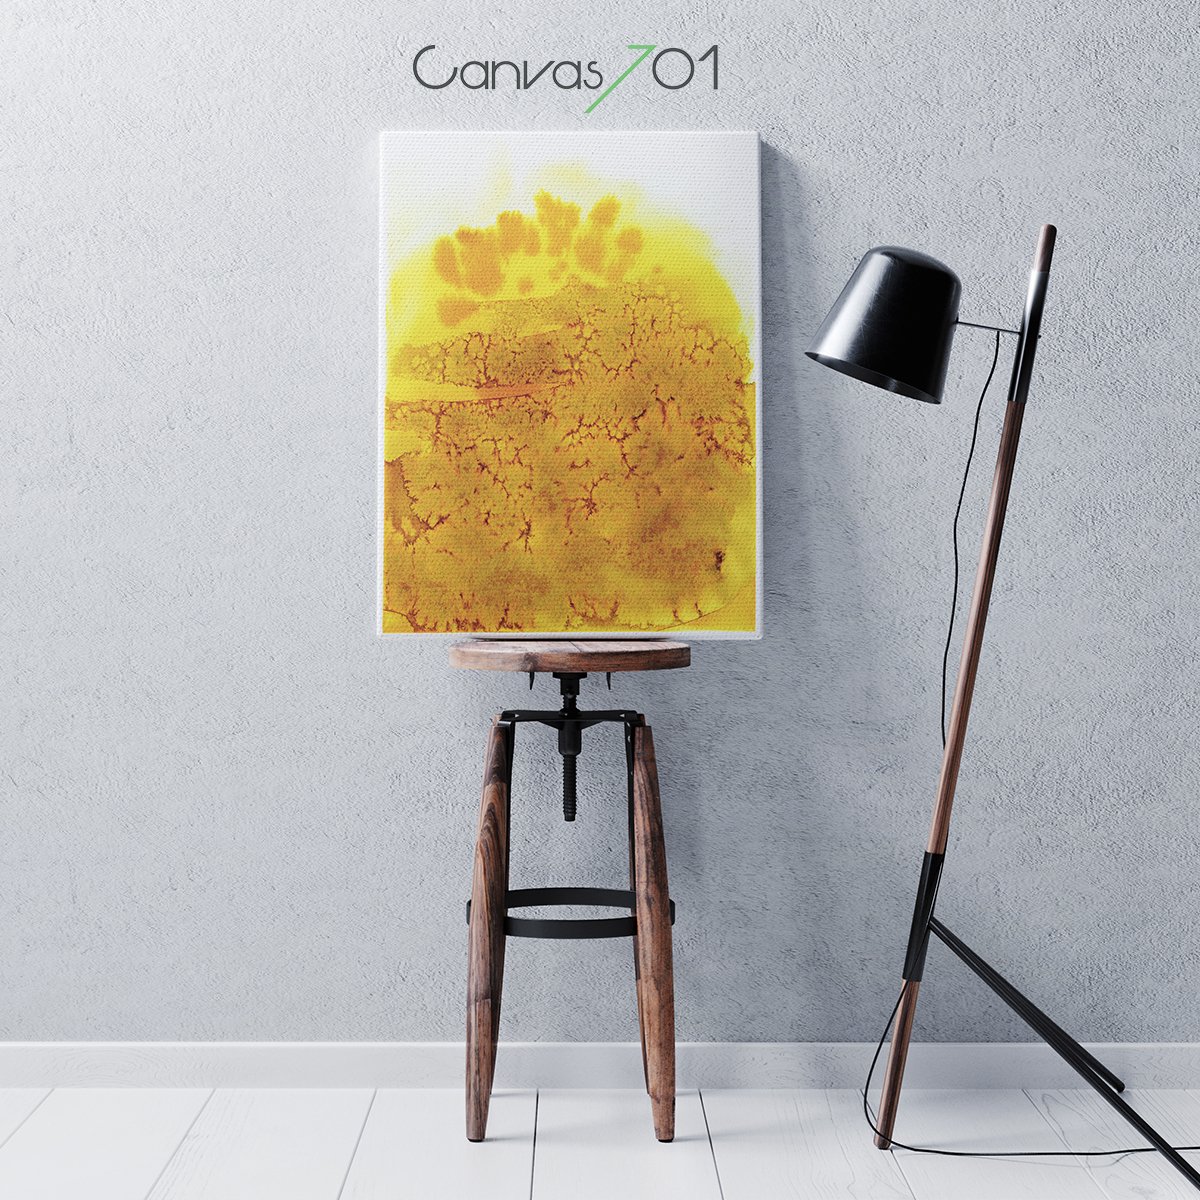 Canvas701 | Sarı Sulu Boya Görünümlü Kanvas Tablo 